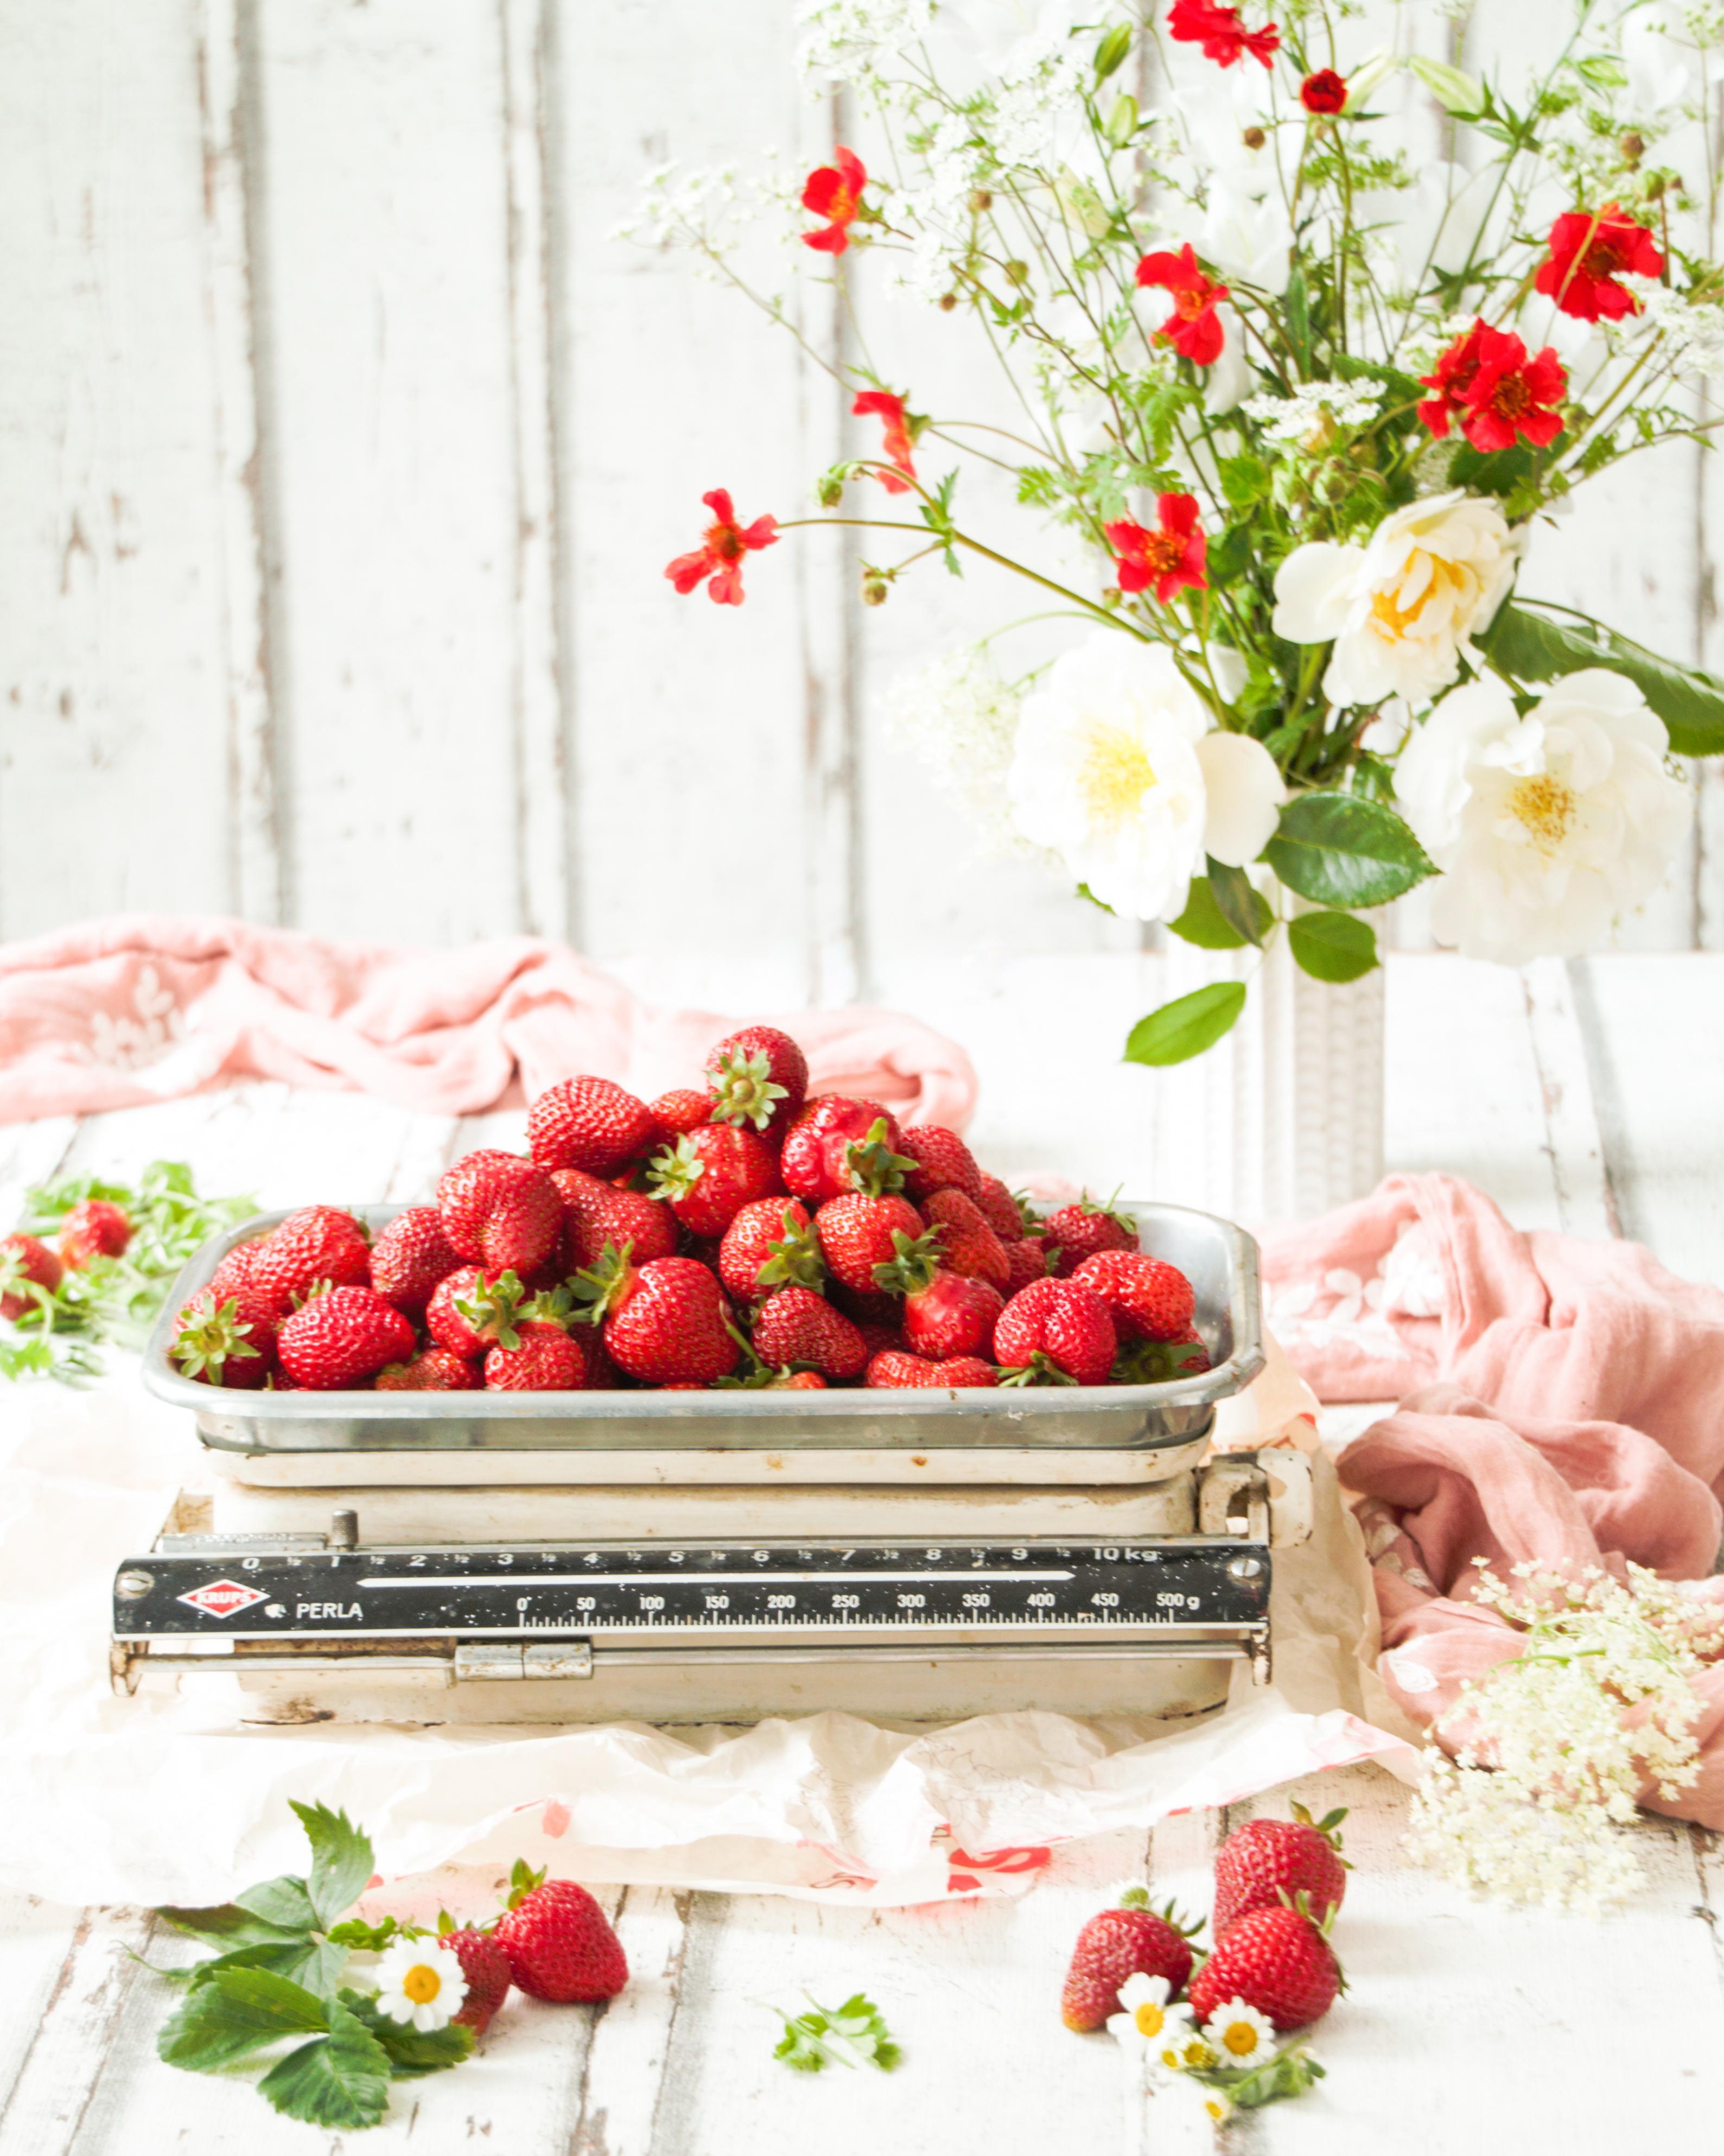 Die Erdbeerernte aus dem Garten 😊
#garten#gartenglück#erdbeeren